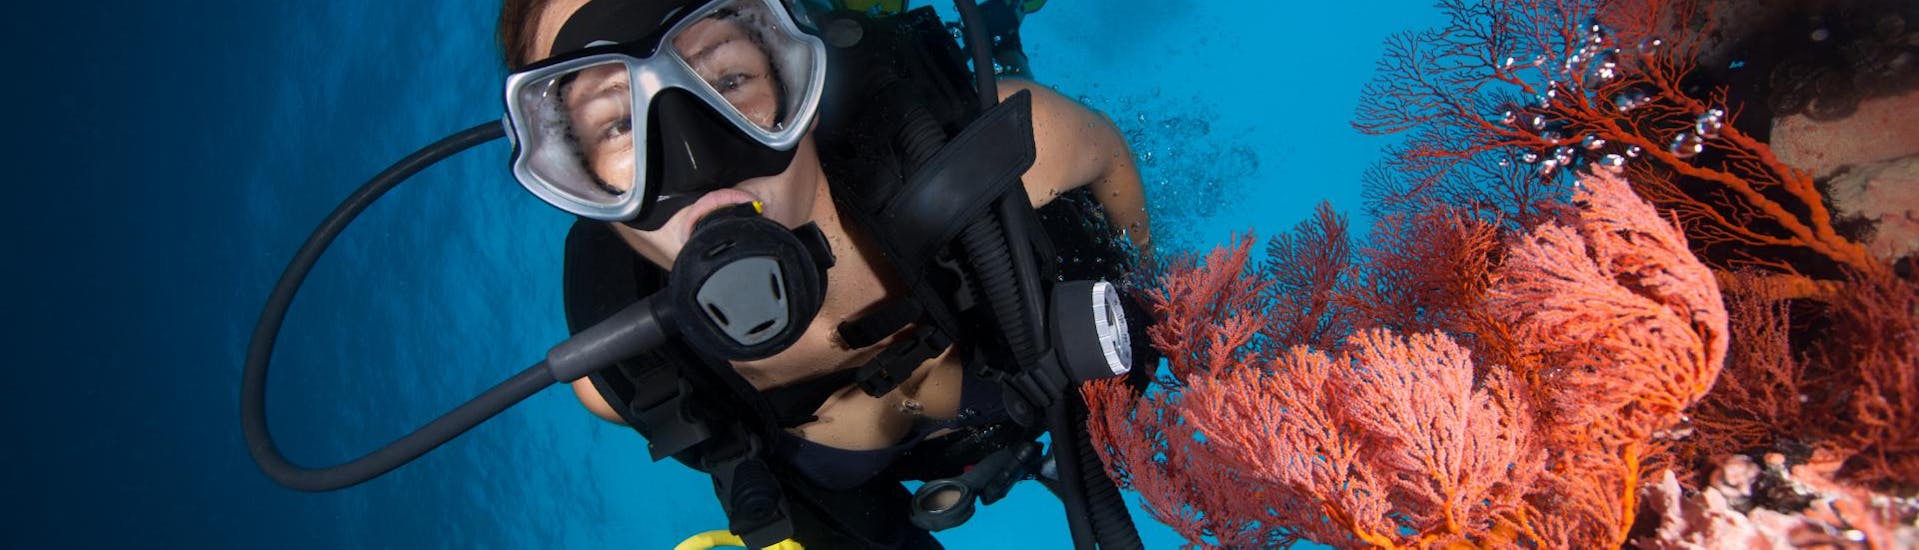 Geführte Tauchgänge um Portocolom für zertifizierte Taucher mit East Coast Divers Mallorca - Hero image